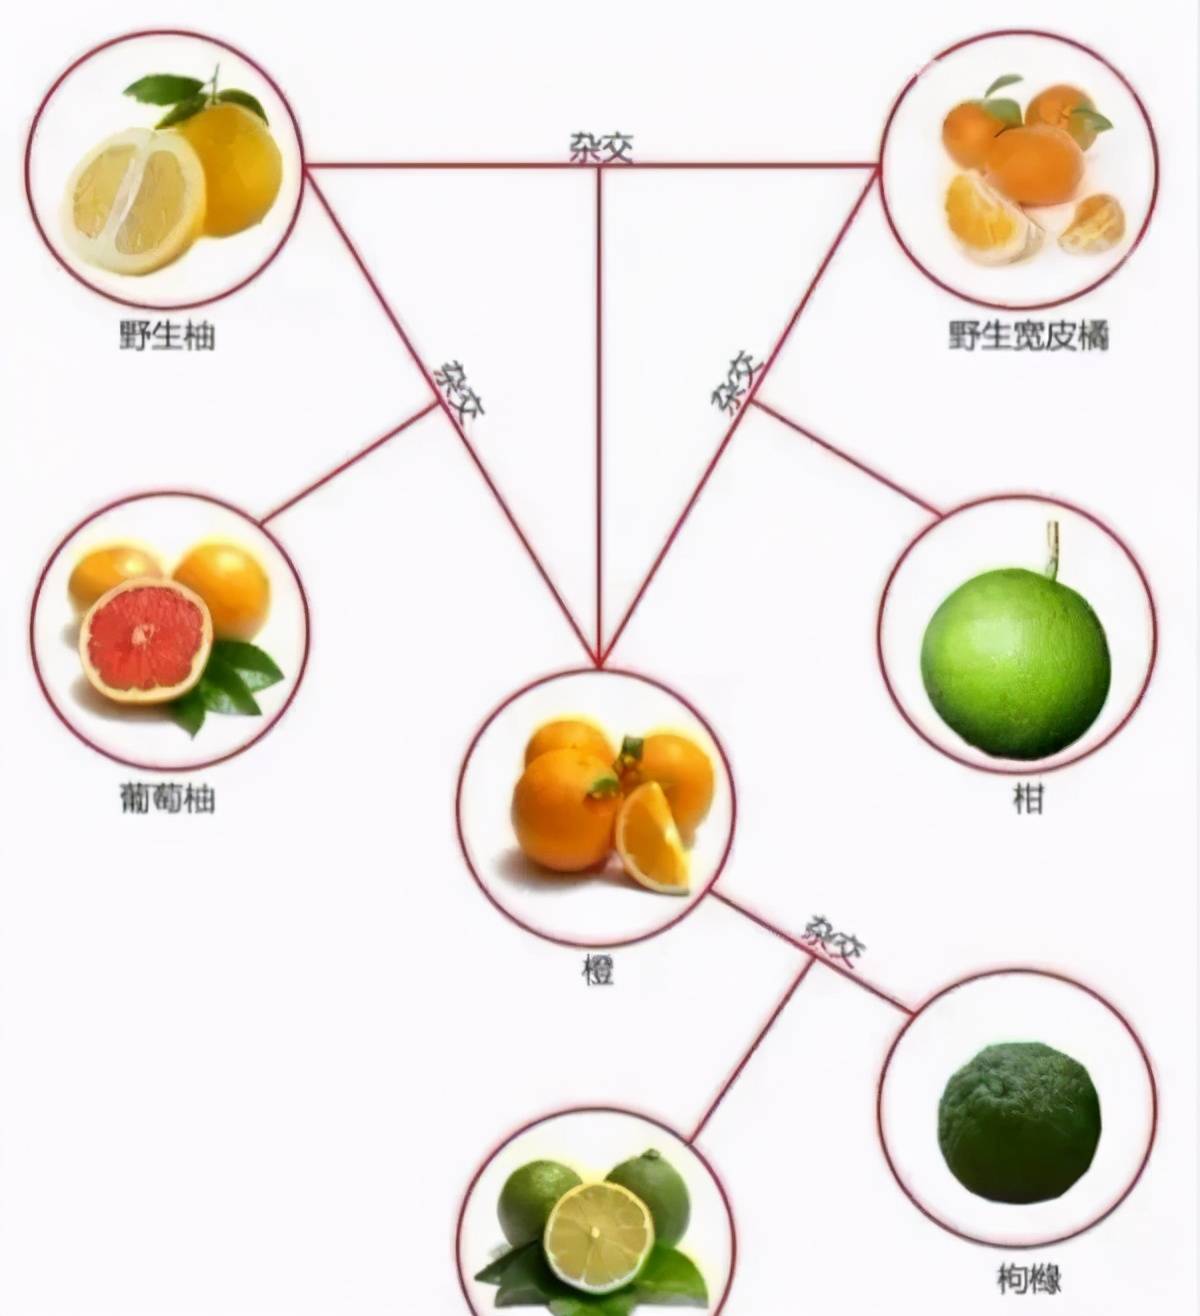 柑,桔,橙,柚之间有何区别?一图搞懂柑橘橙柚关系